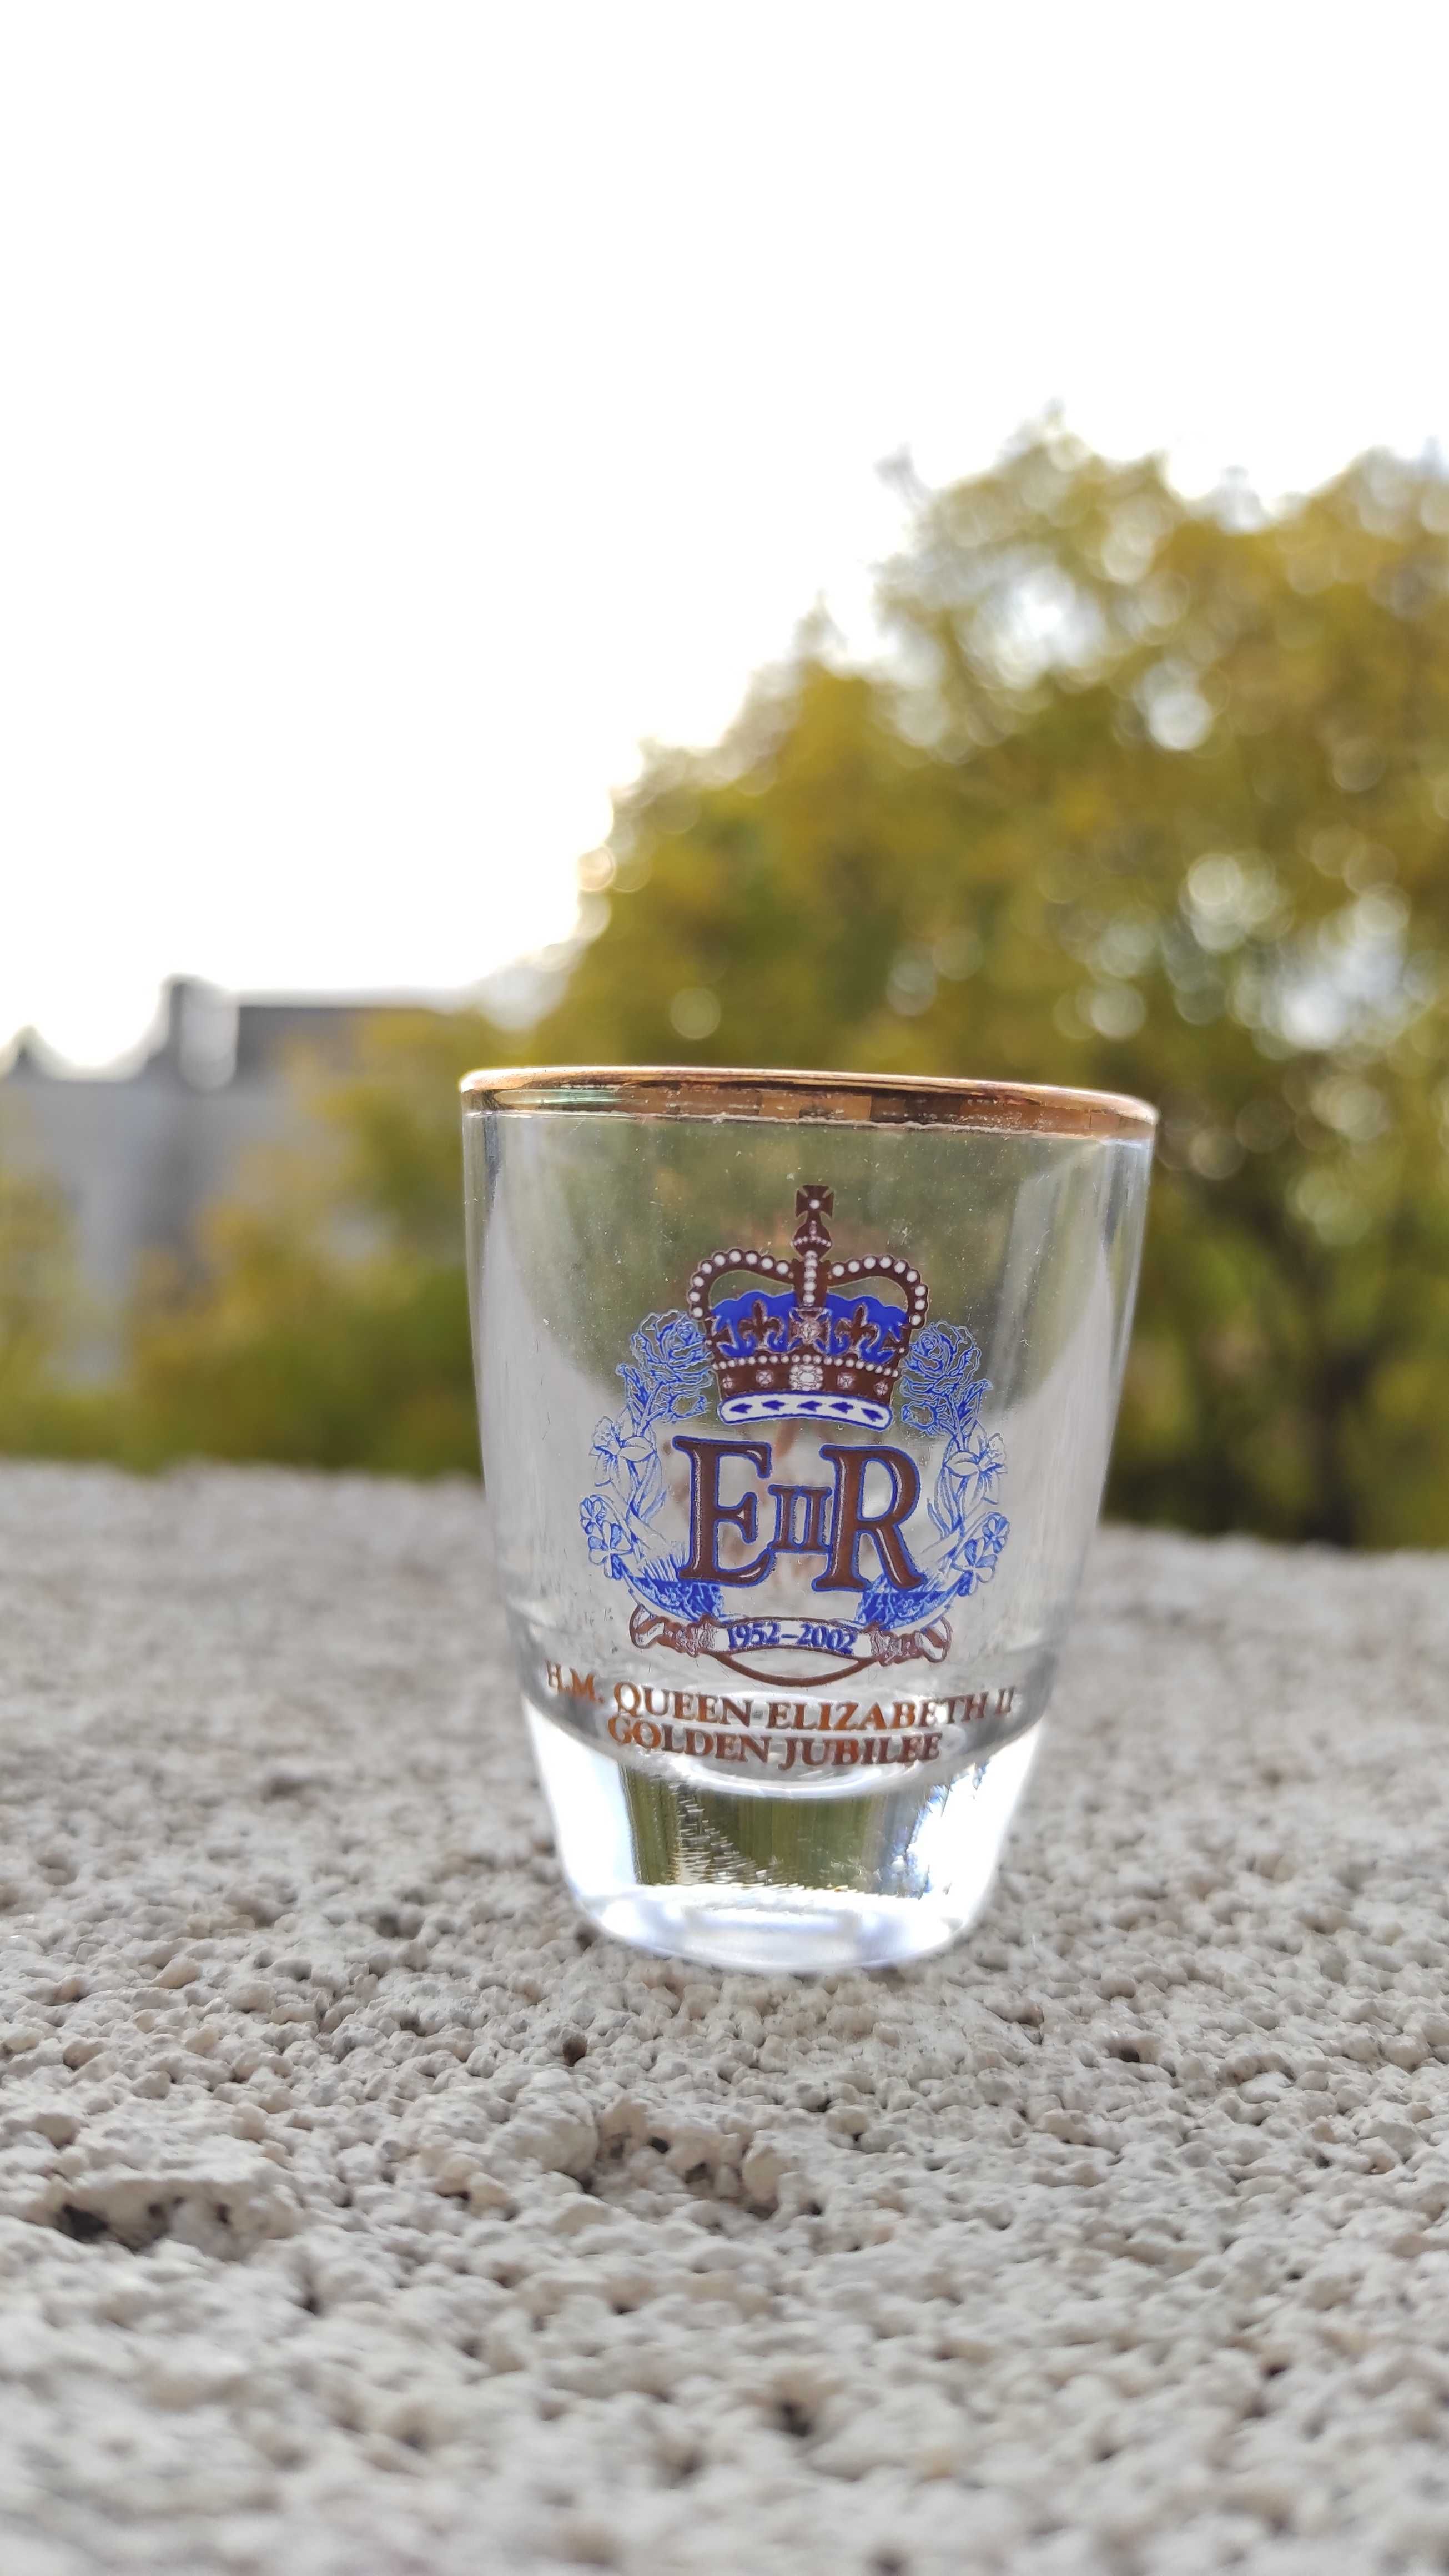 Колекционерски юбилейни чаши 50 години управление на Елизабет II